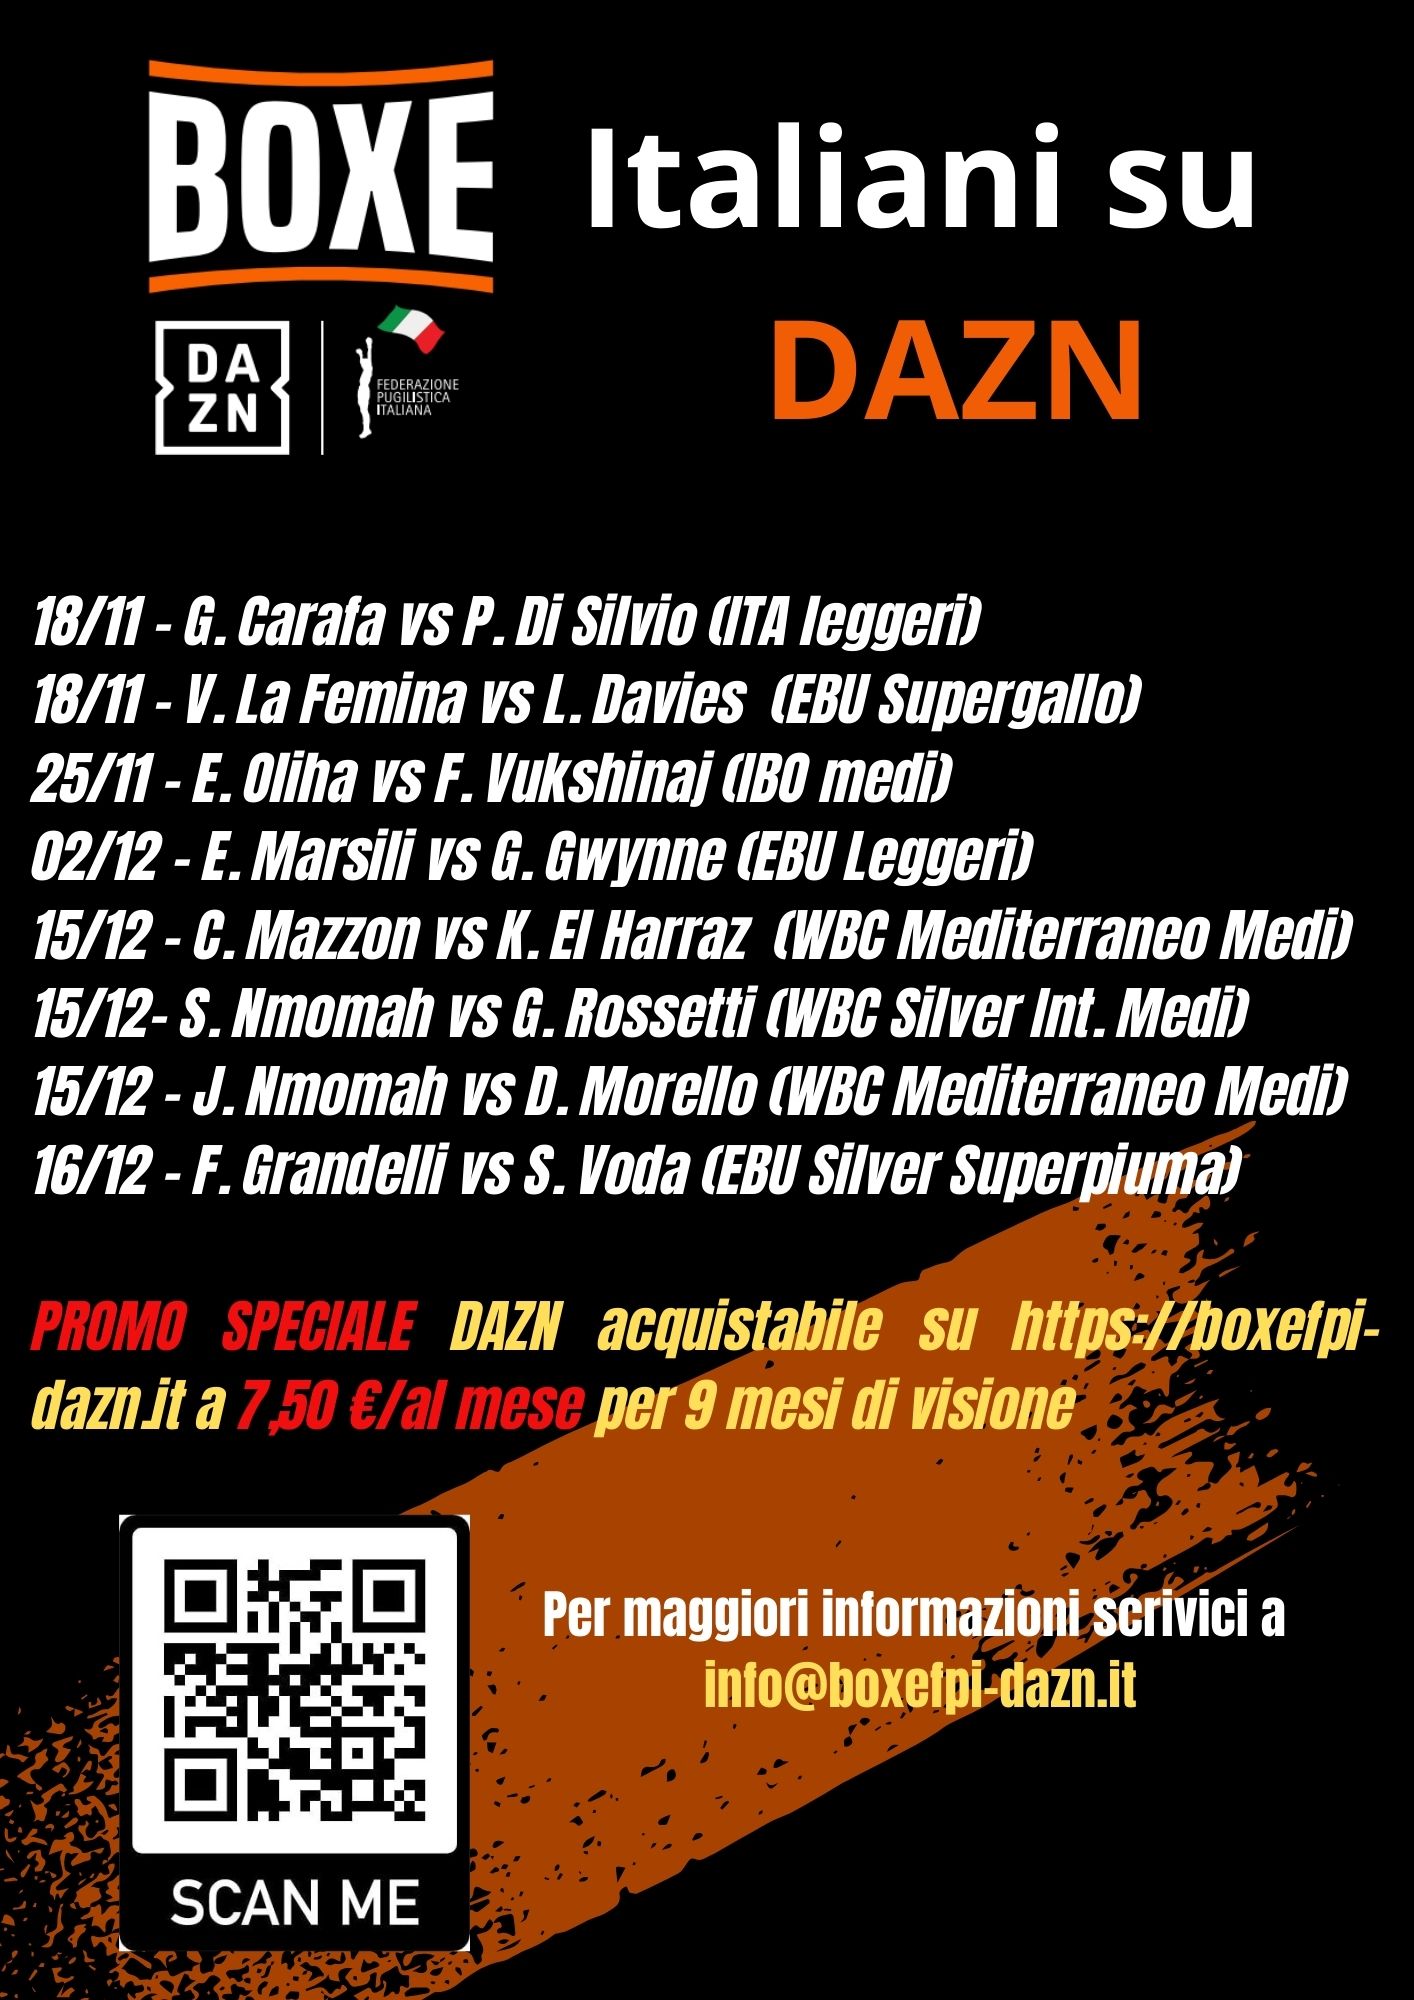 Tanta Boxe con Pugili Italiani su Dazn tra Novembre e Dicembre - Corri ad Abbonarti con la Promo DAZN Start/FPI 